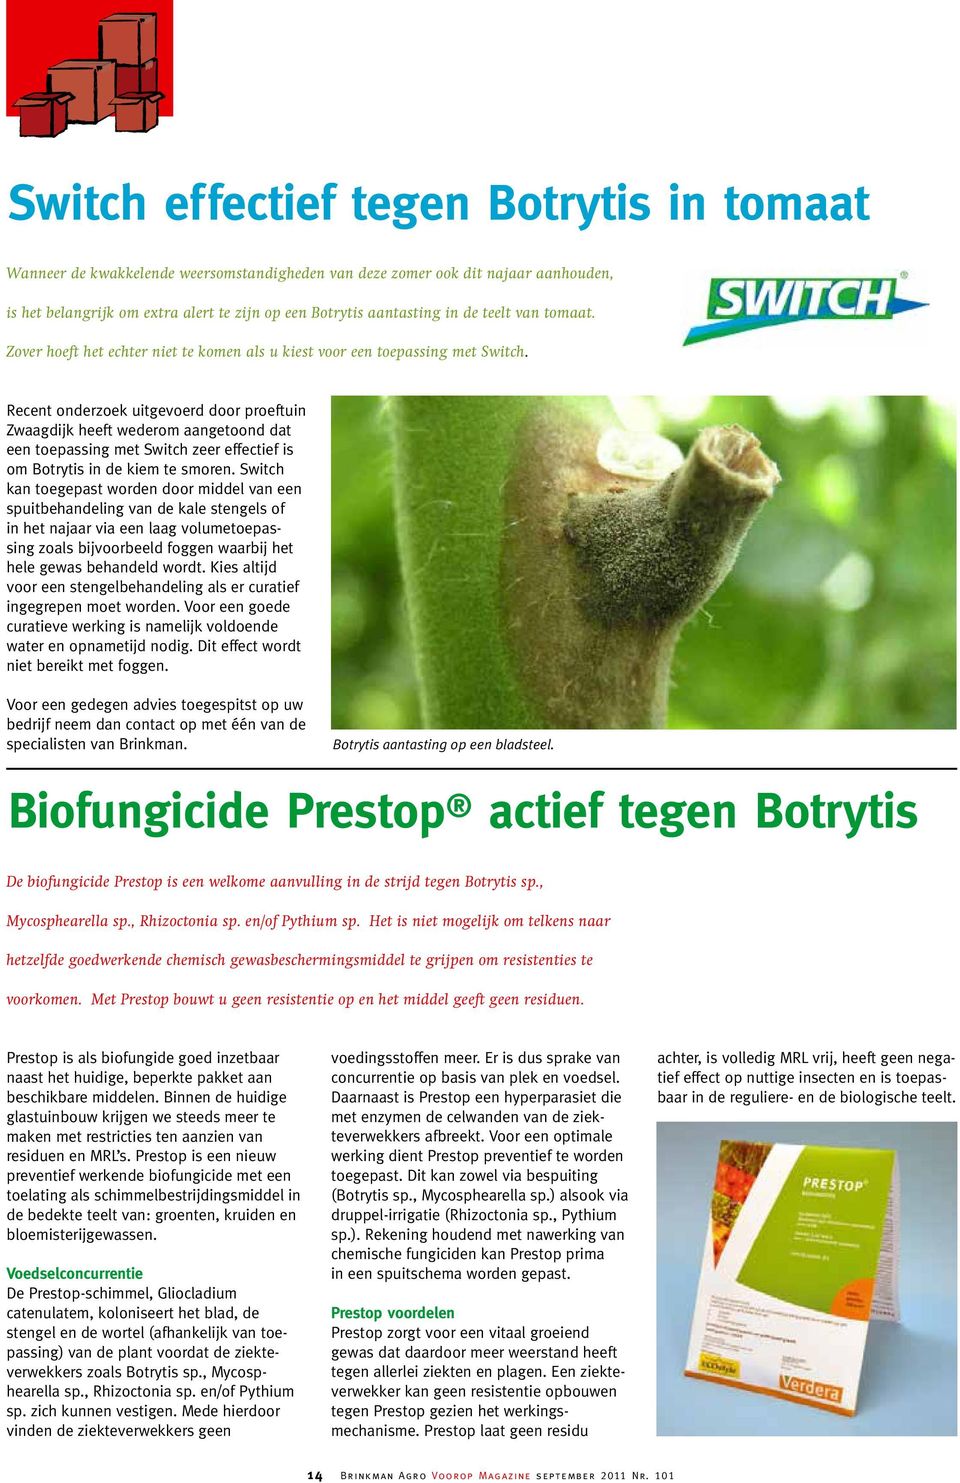 Recent onderzoek uitgevoerd door proeftuin Zwaagdijk heeft wederom aangetoond dat een toepassing met Switch zeer effectief is om Botrytis in de kiem te smoren.